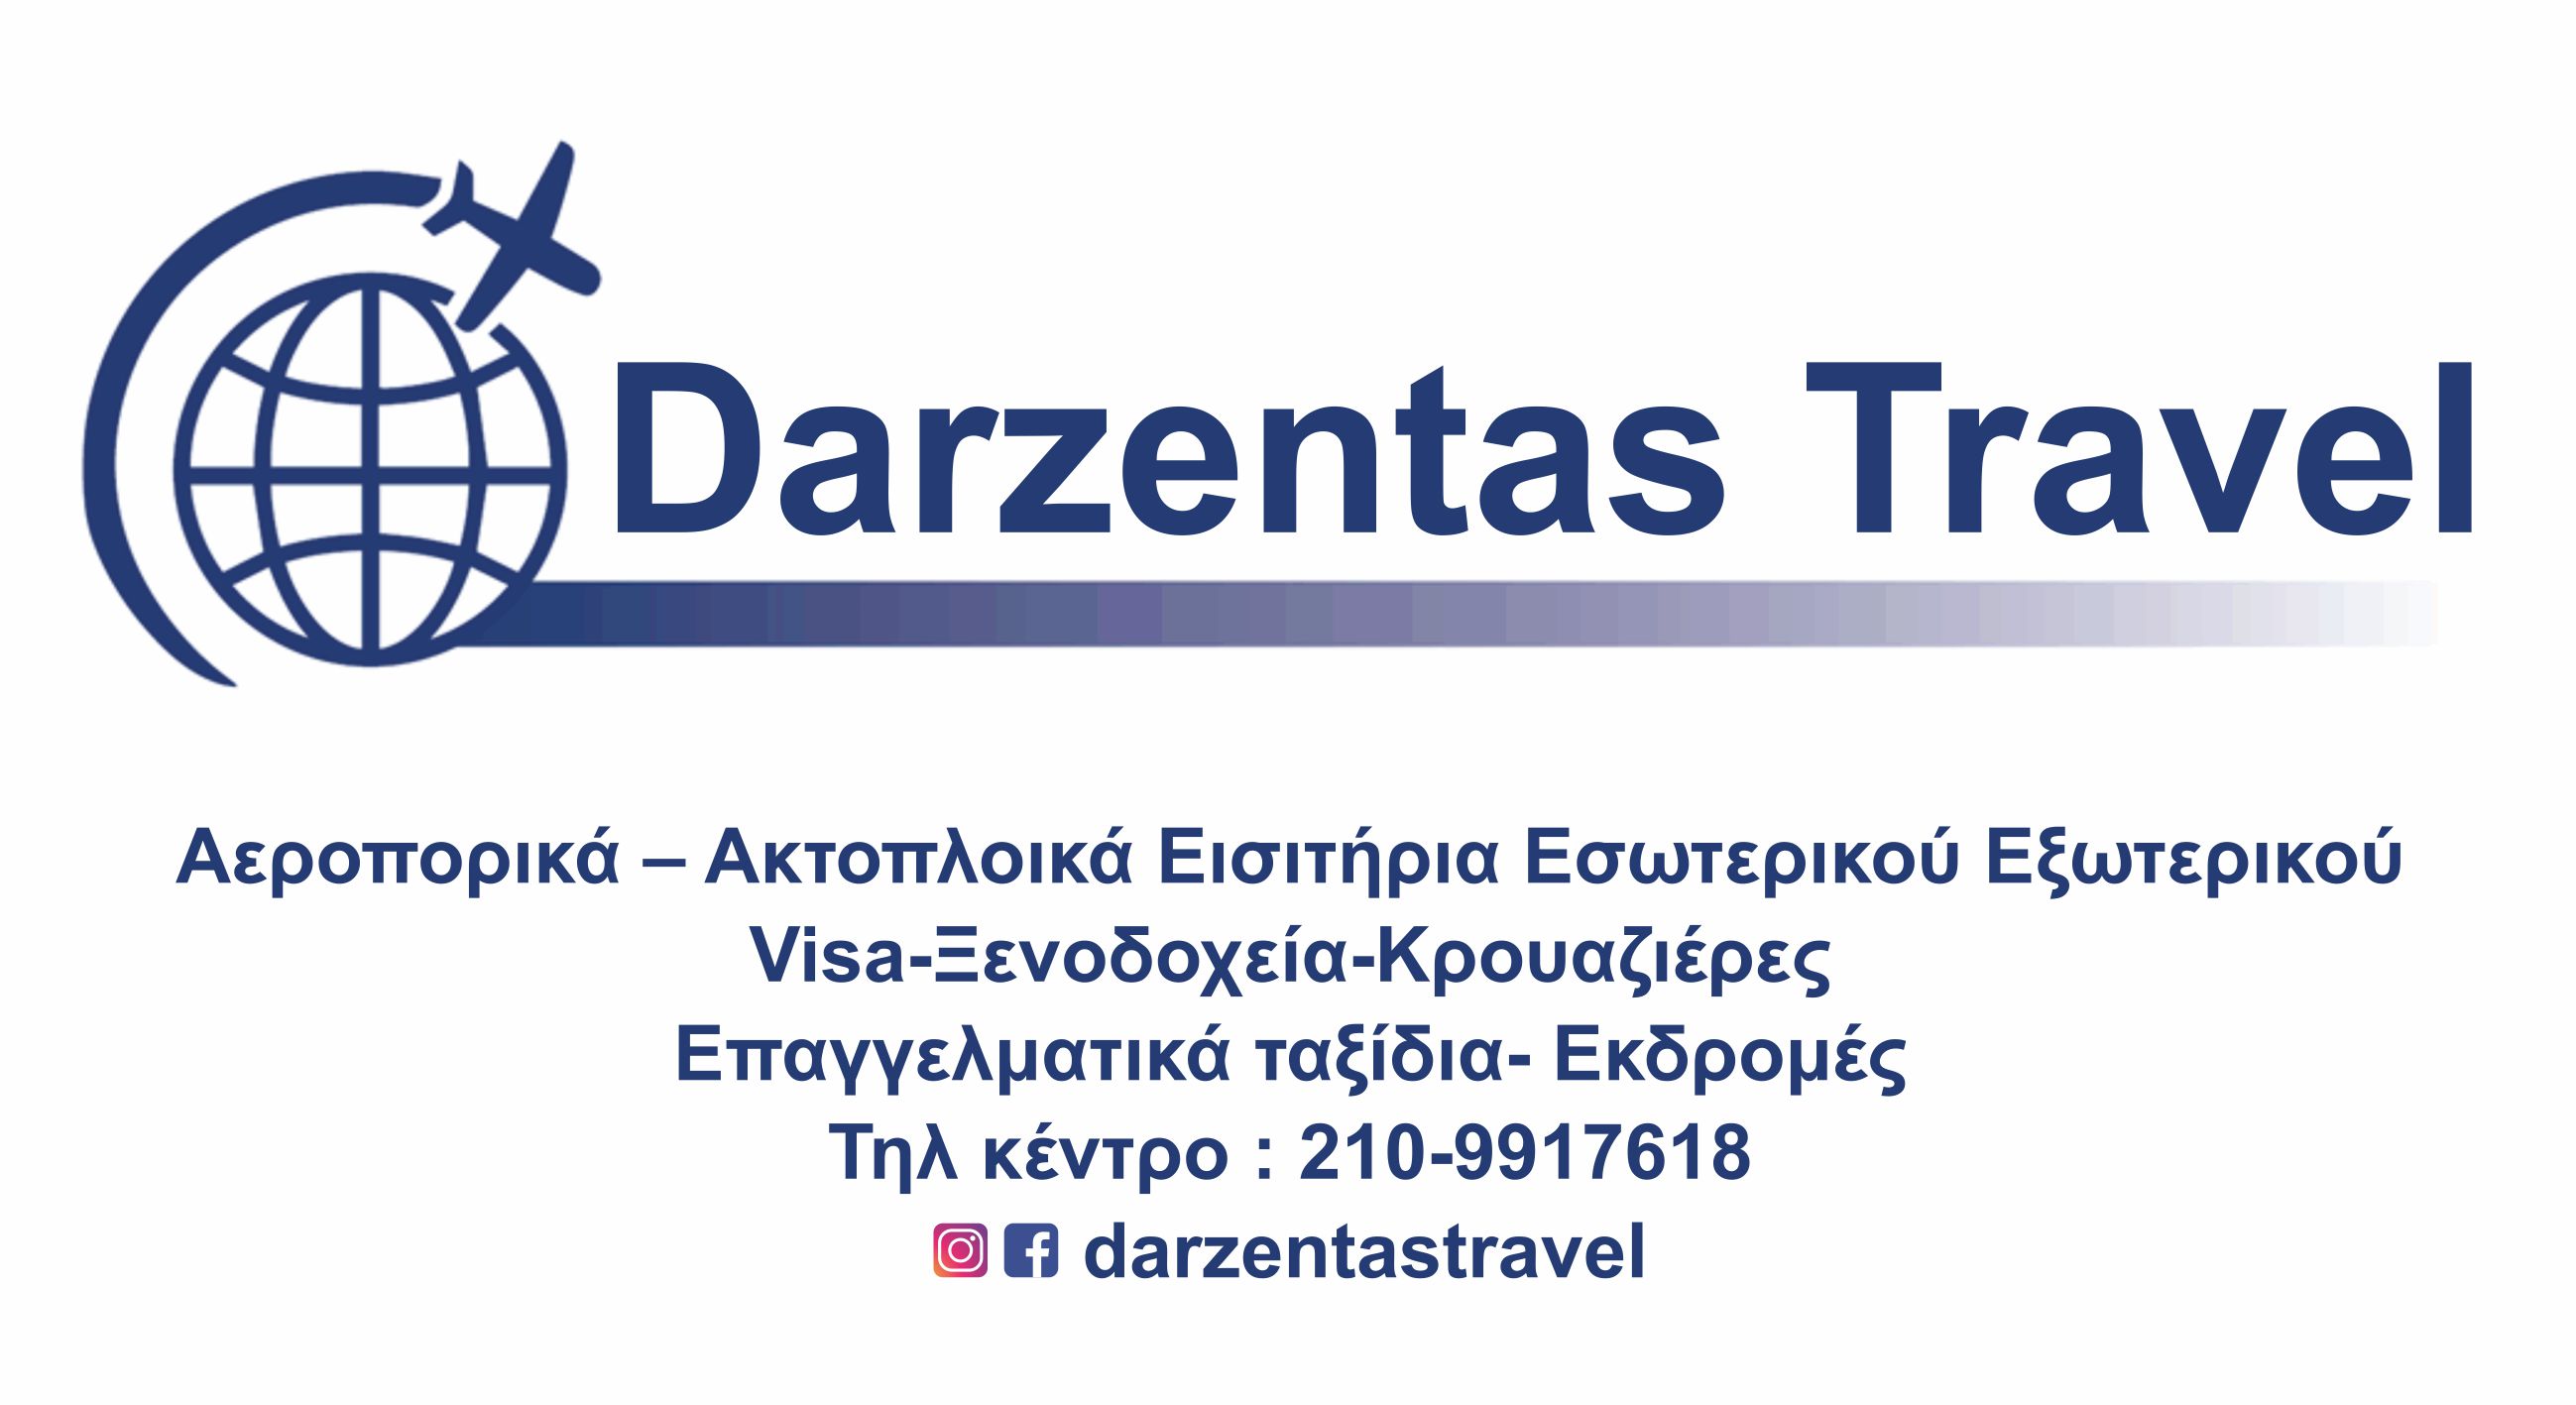 Darzentas Travel